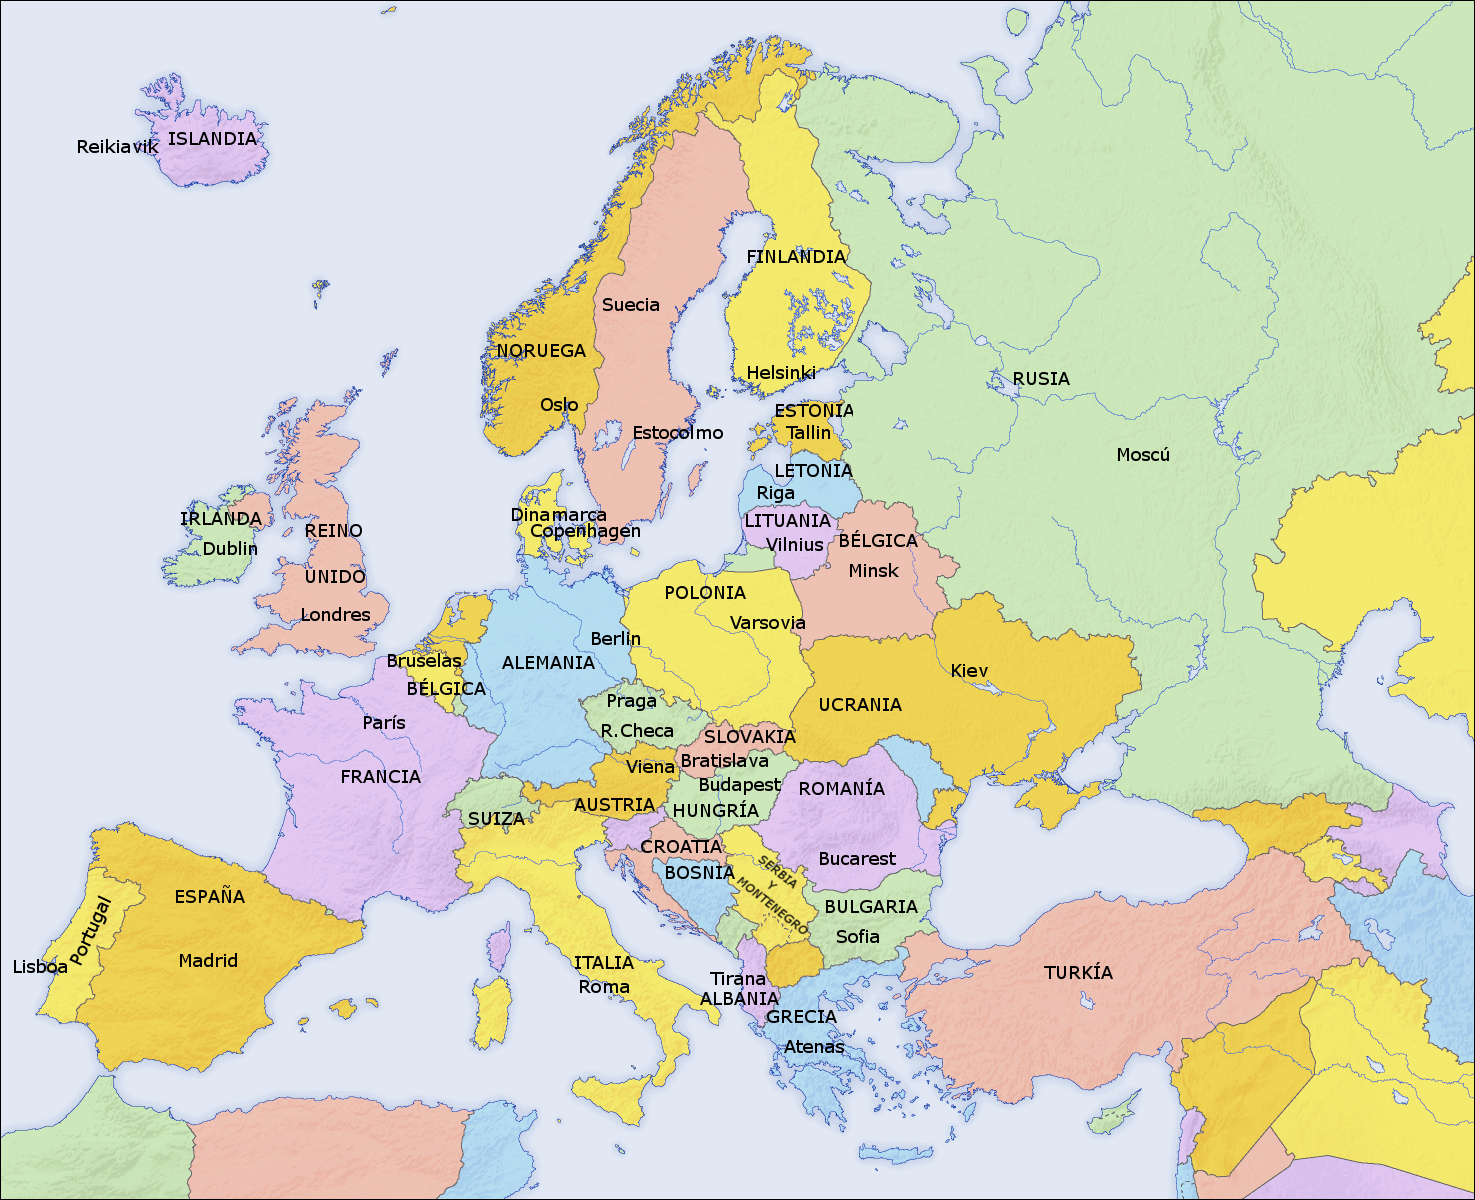 blog-de-kevin-genares-mapa-politico-de-europa